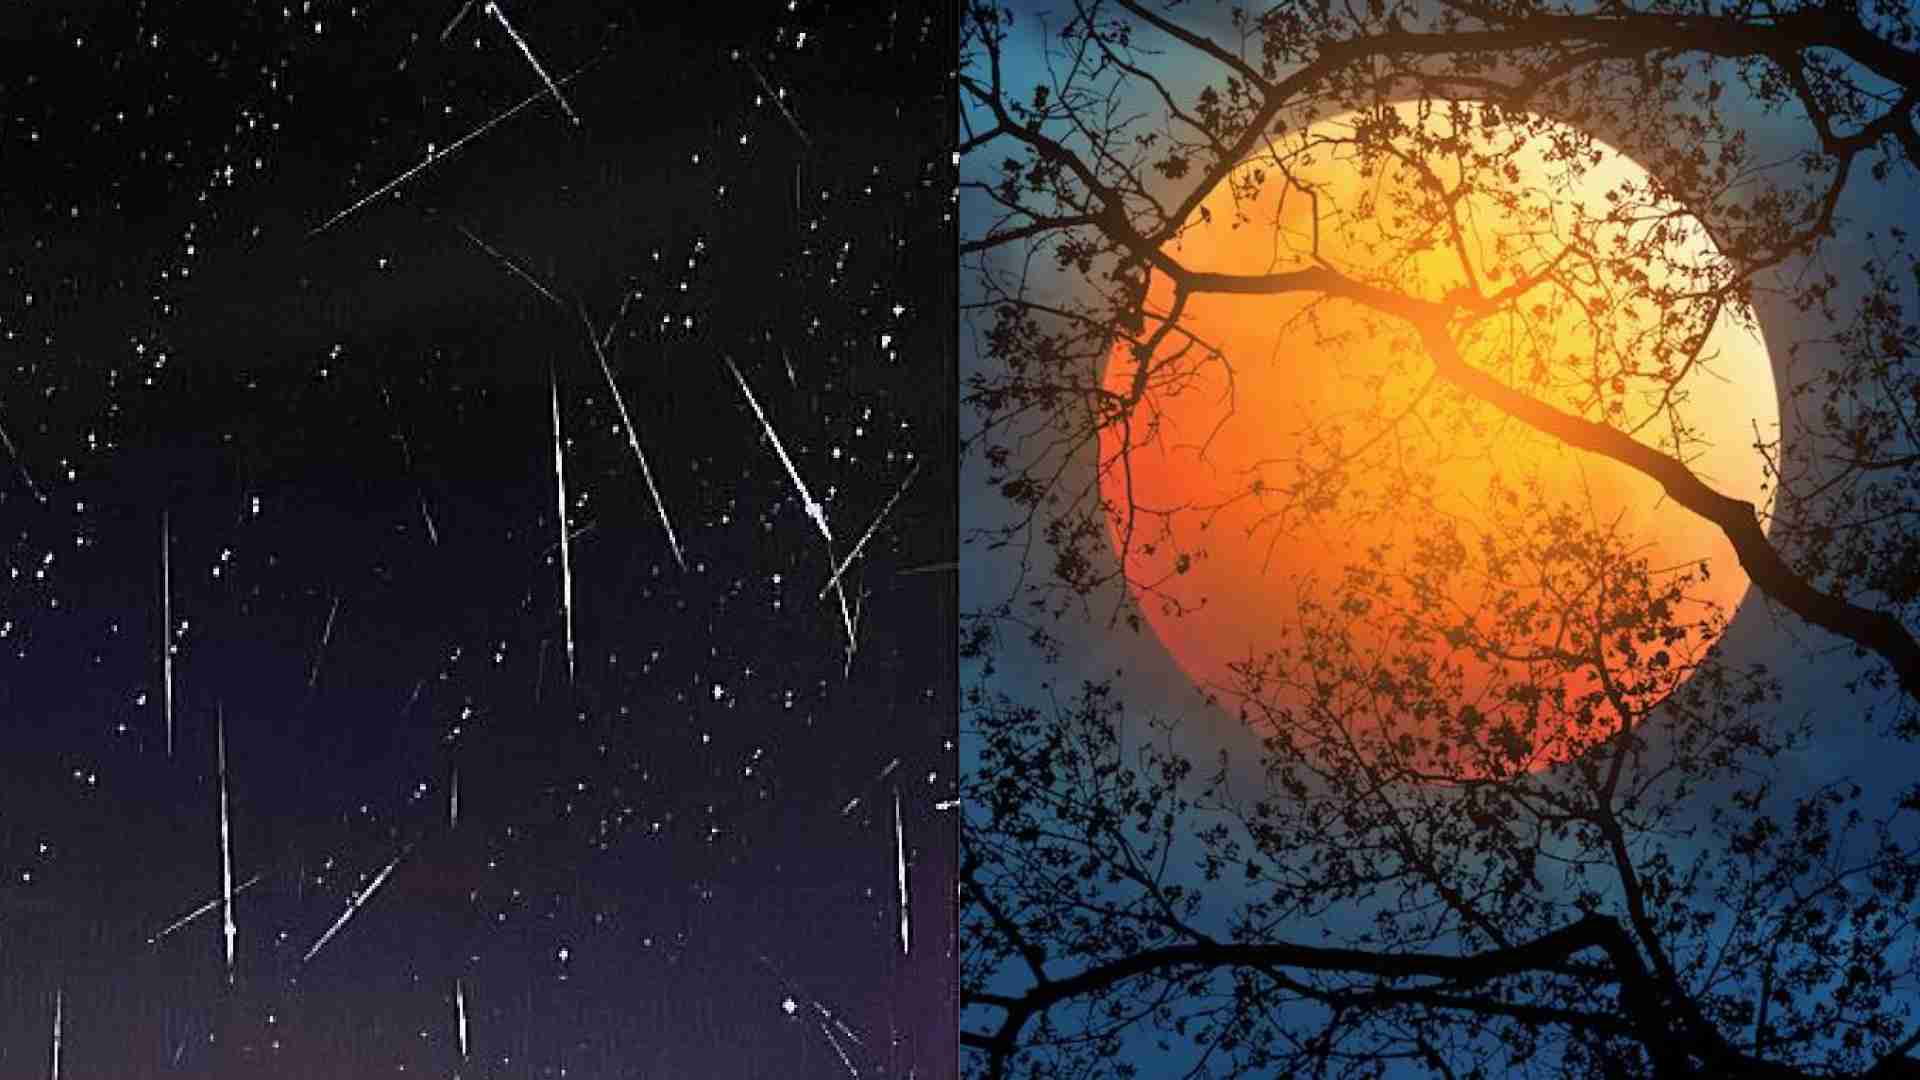 Chuva de meteoros e Lua do Caçador poderão ser vistas no céu de MS neste fim de semana